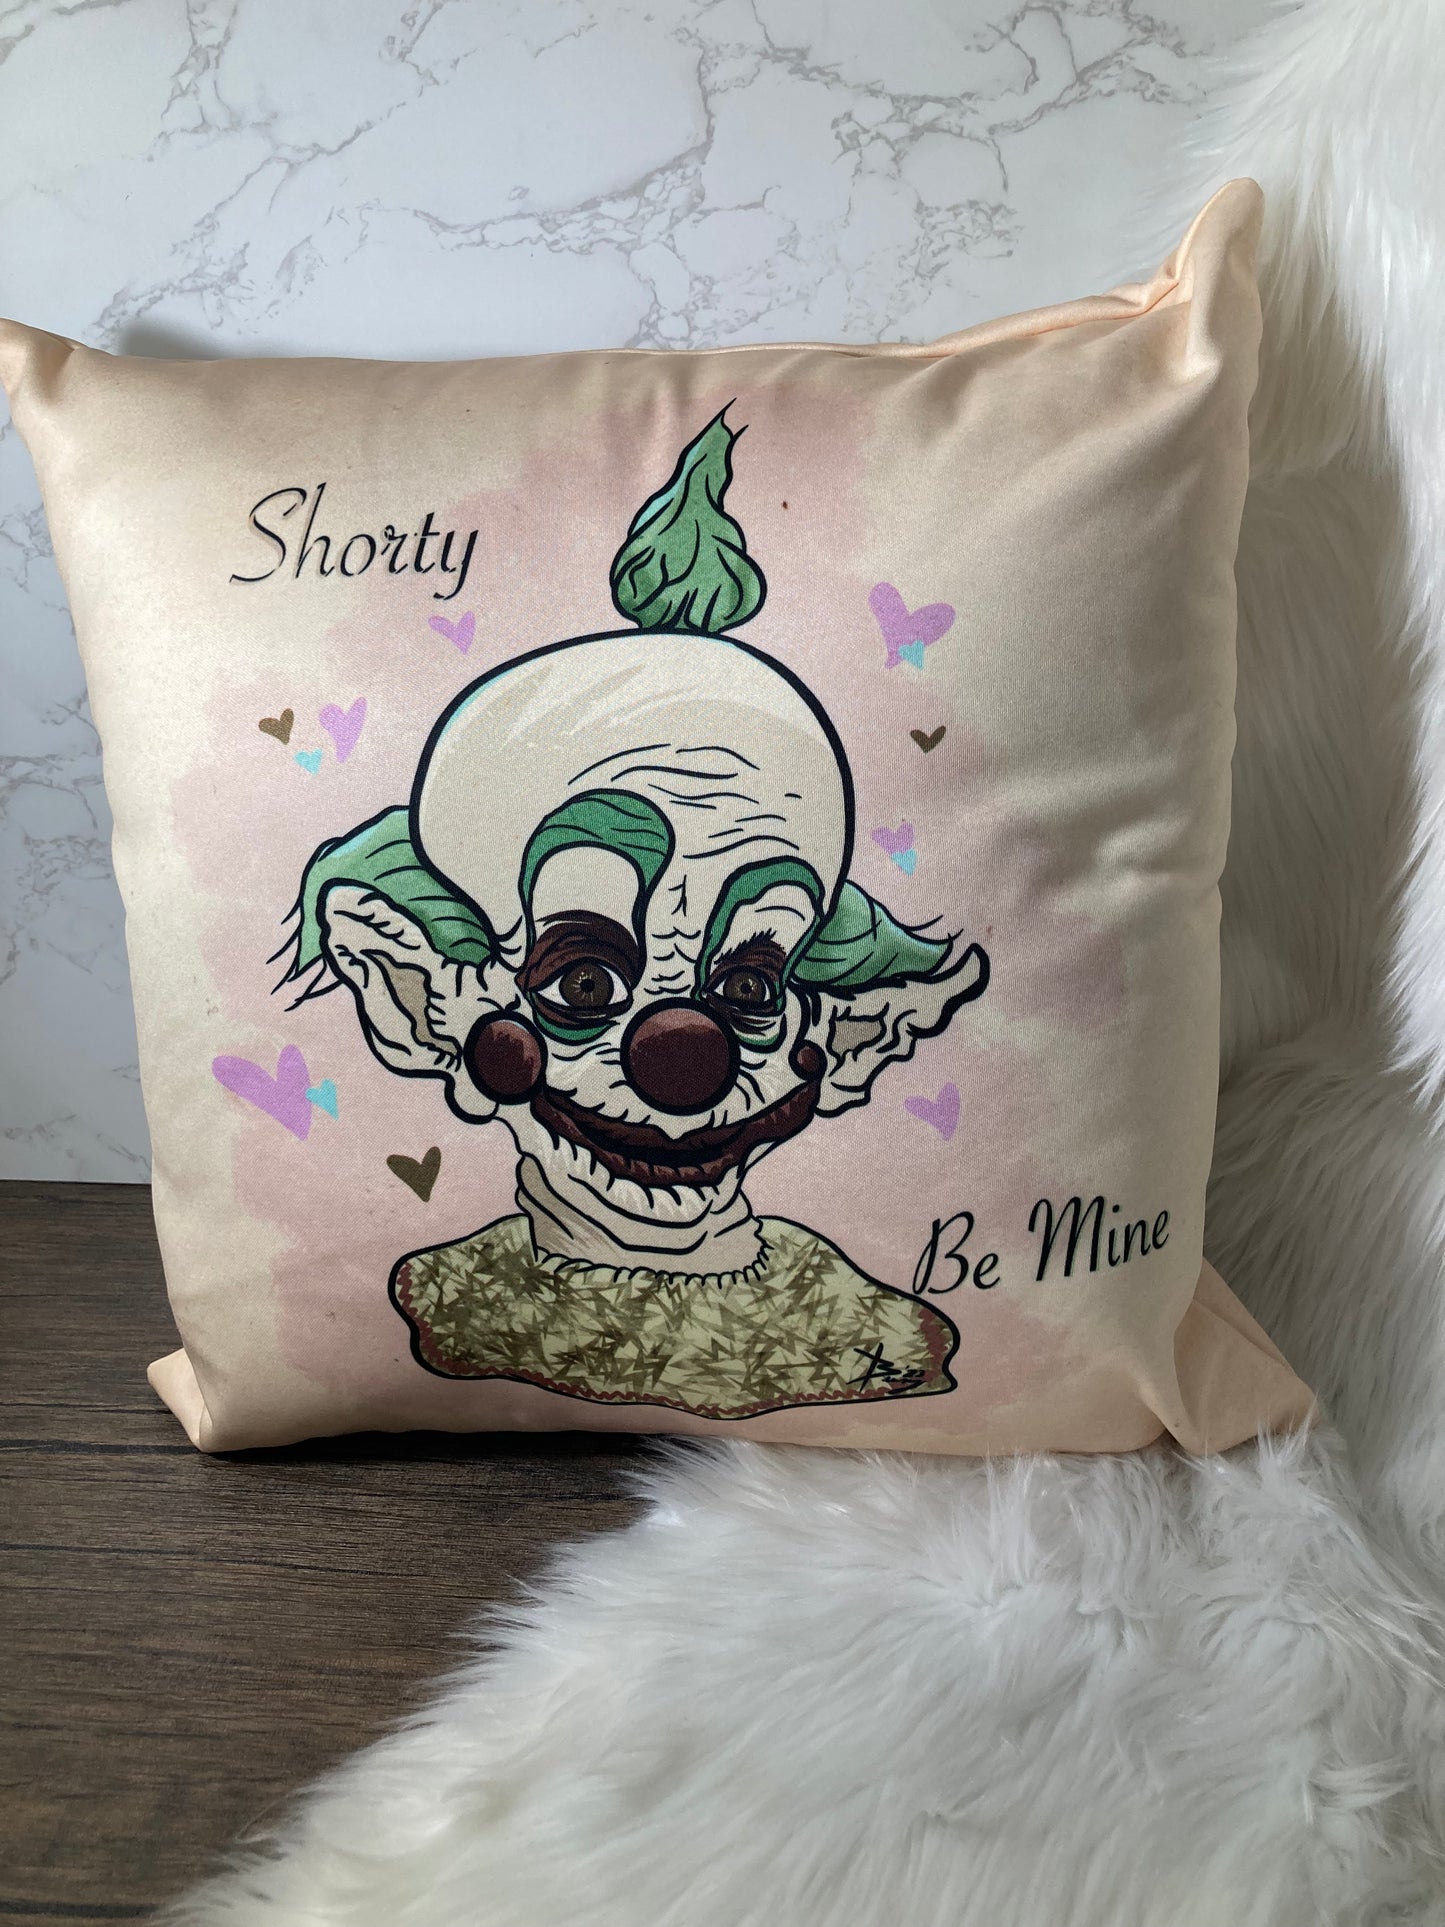 Shorty Klown pillow 18”